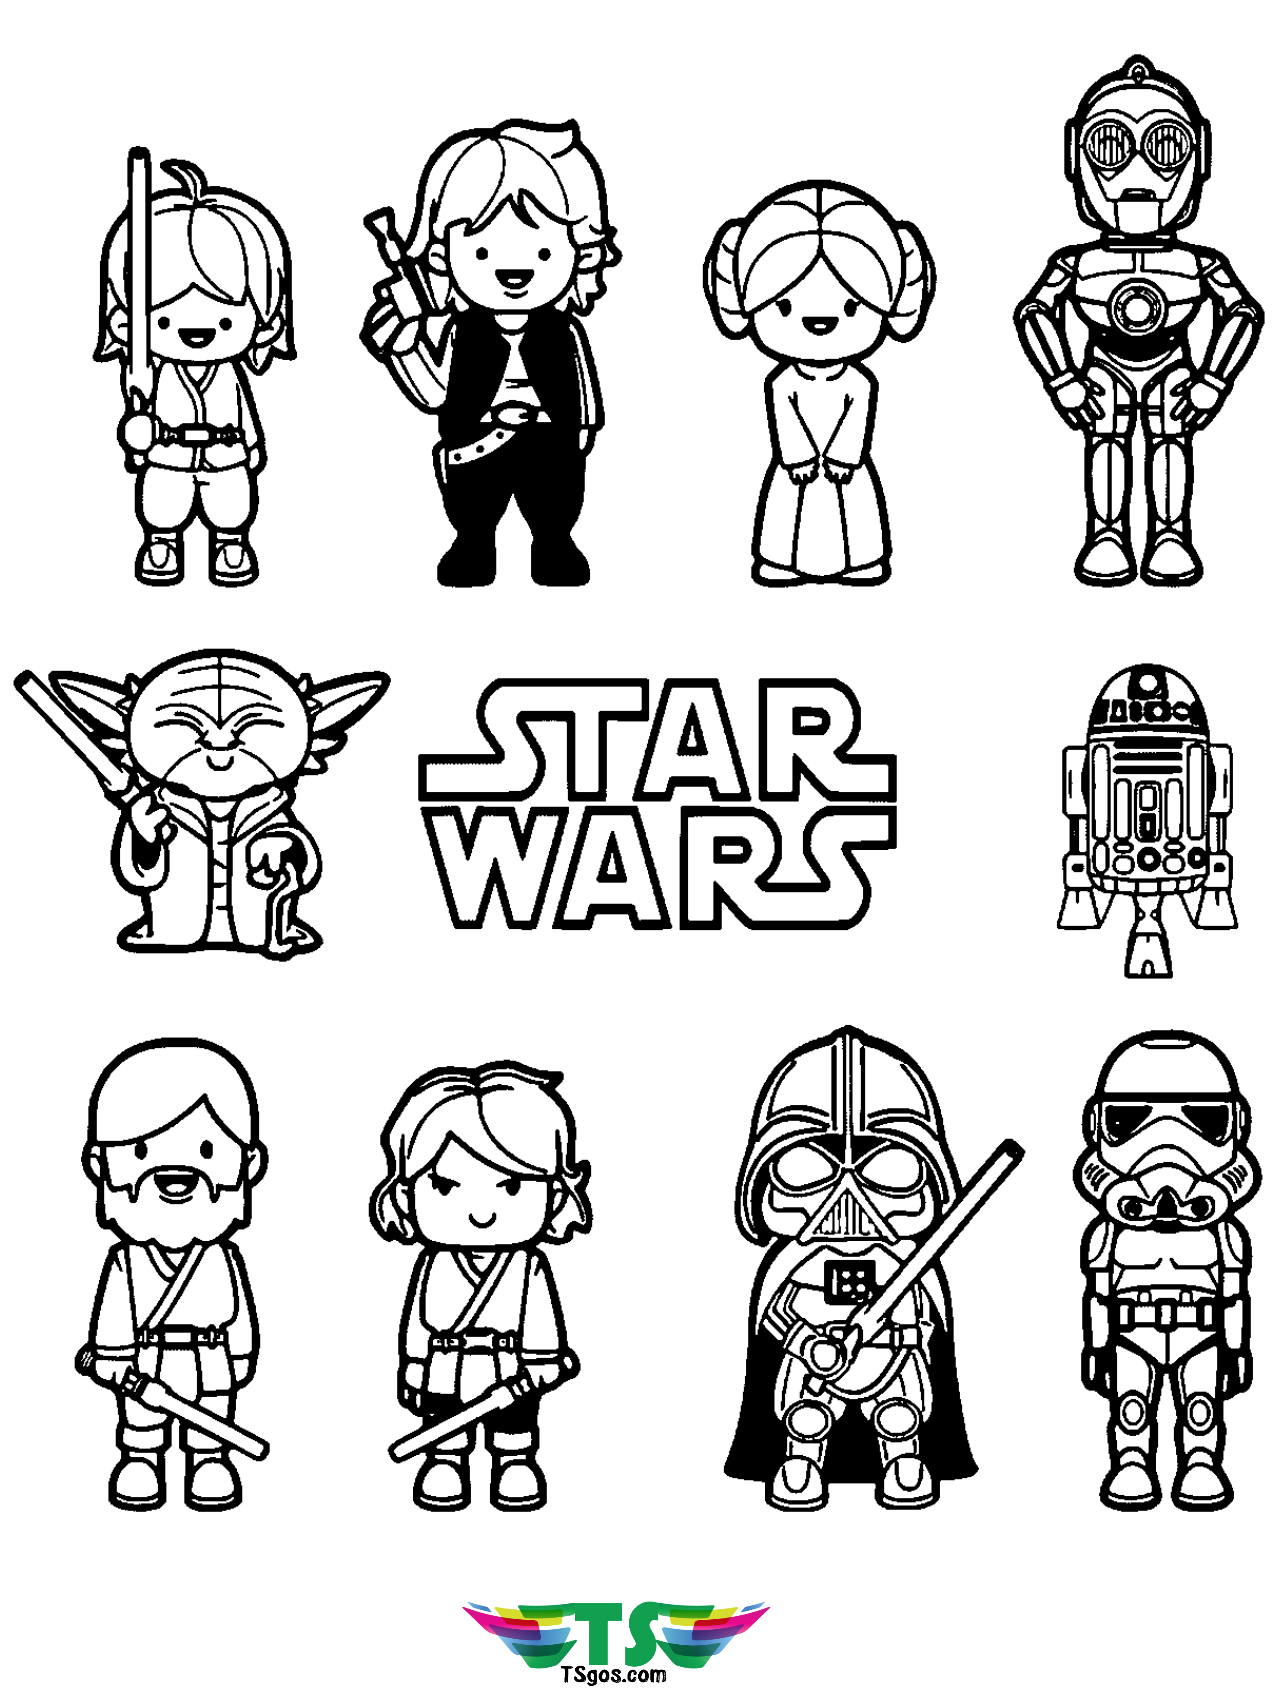 Download Star Wars cartoon characters coloring page. - TSgos.com